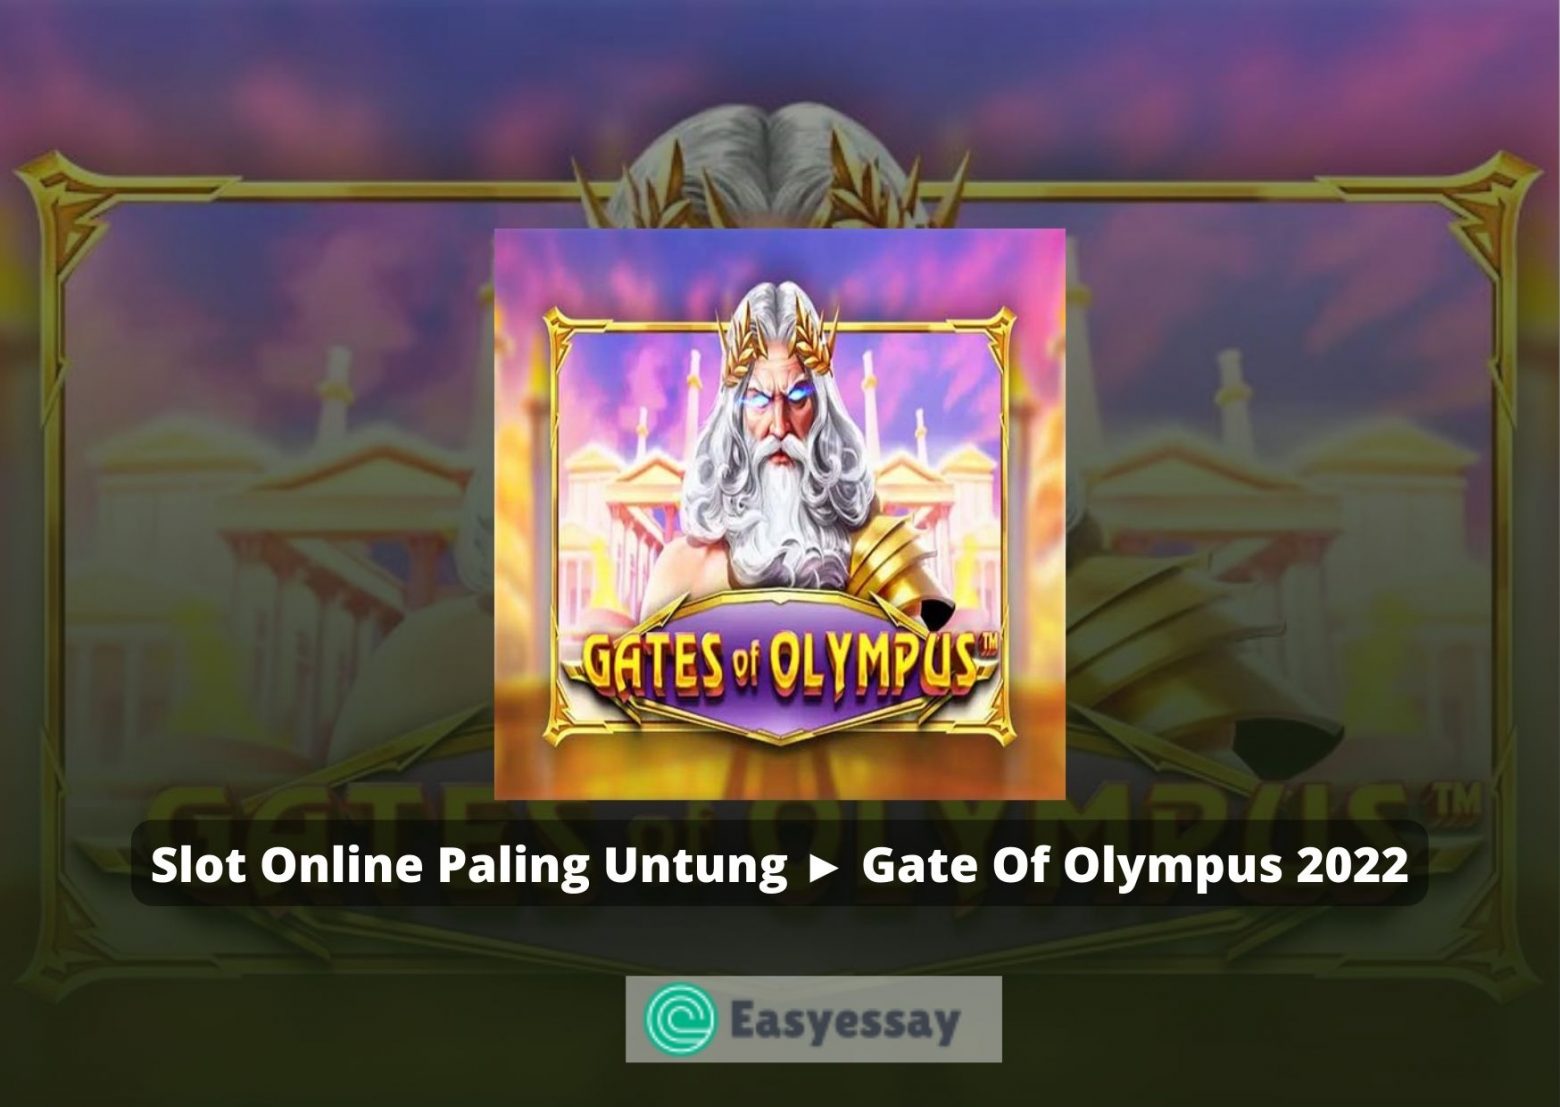 Slot Online Paling Untung ► Gate Of Olympus 2022